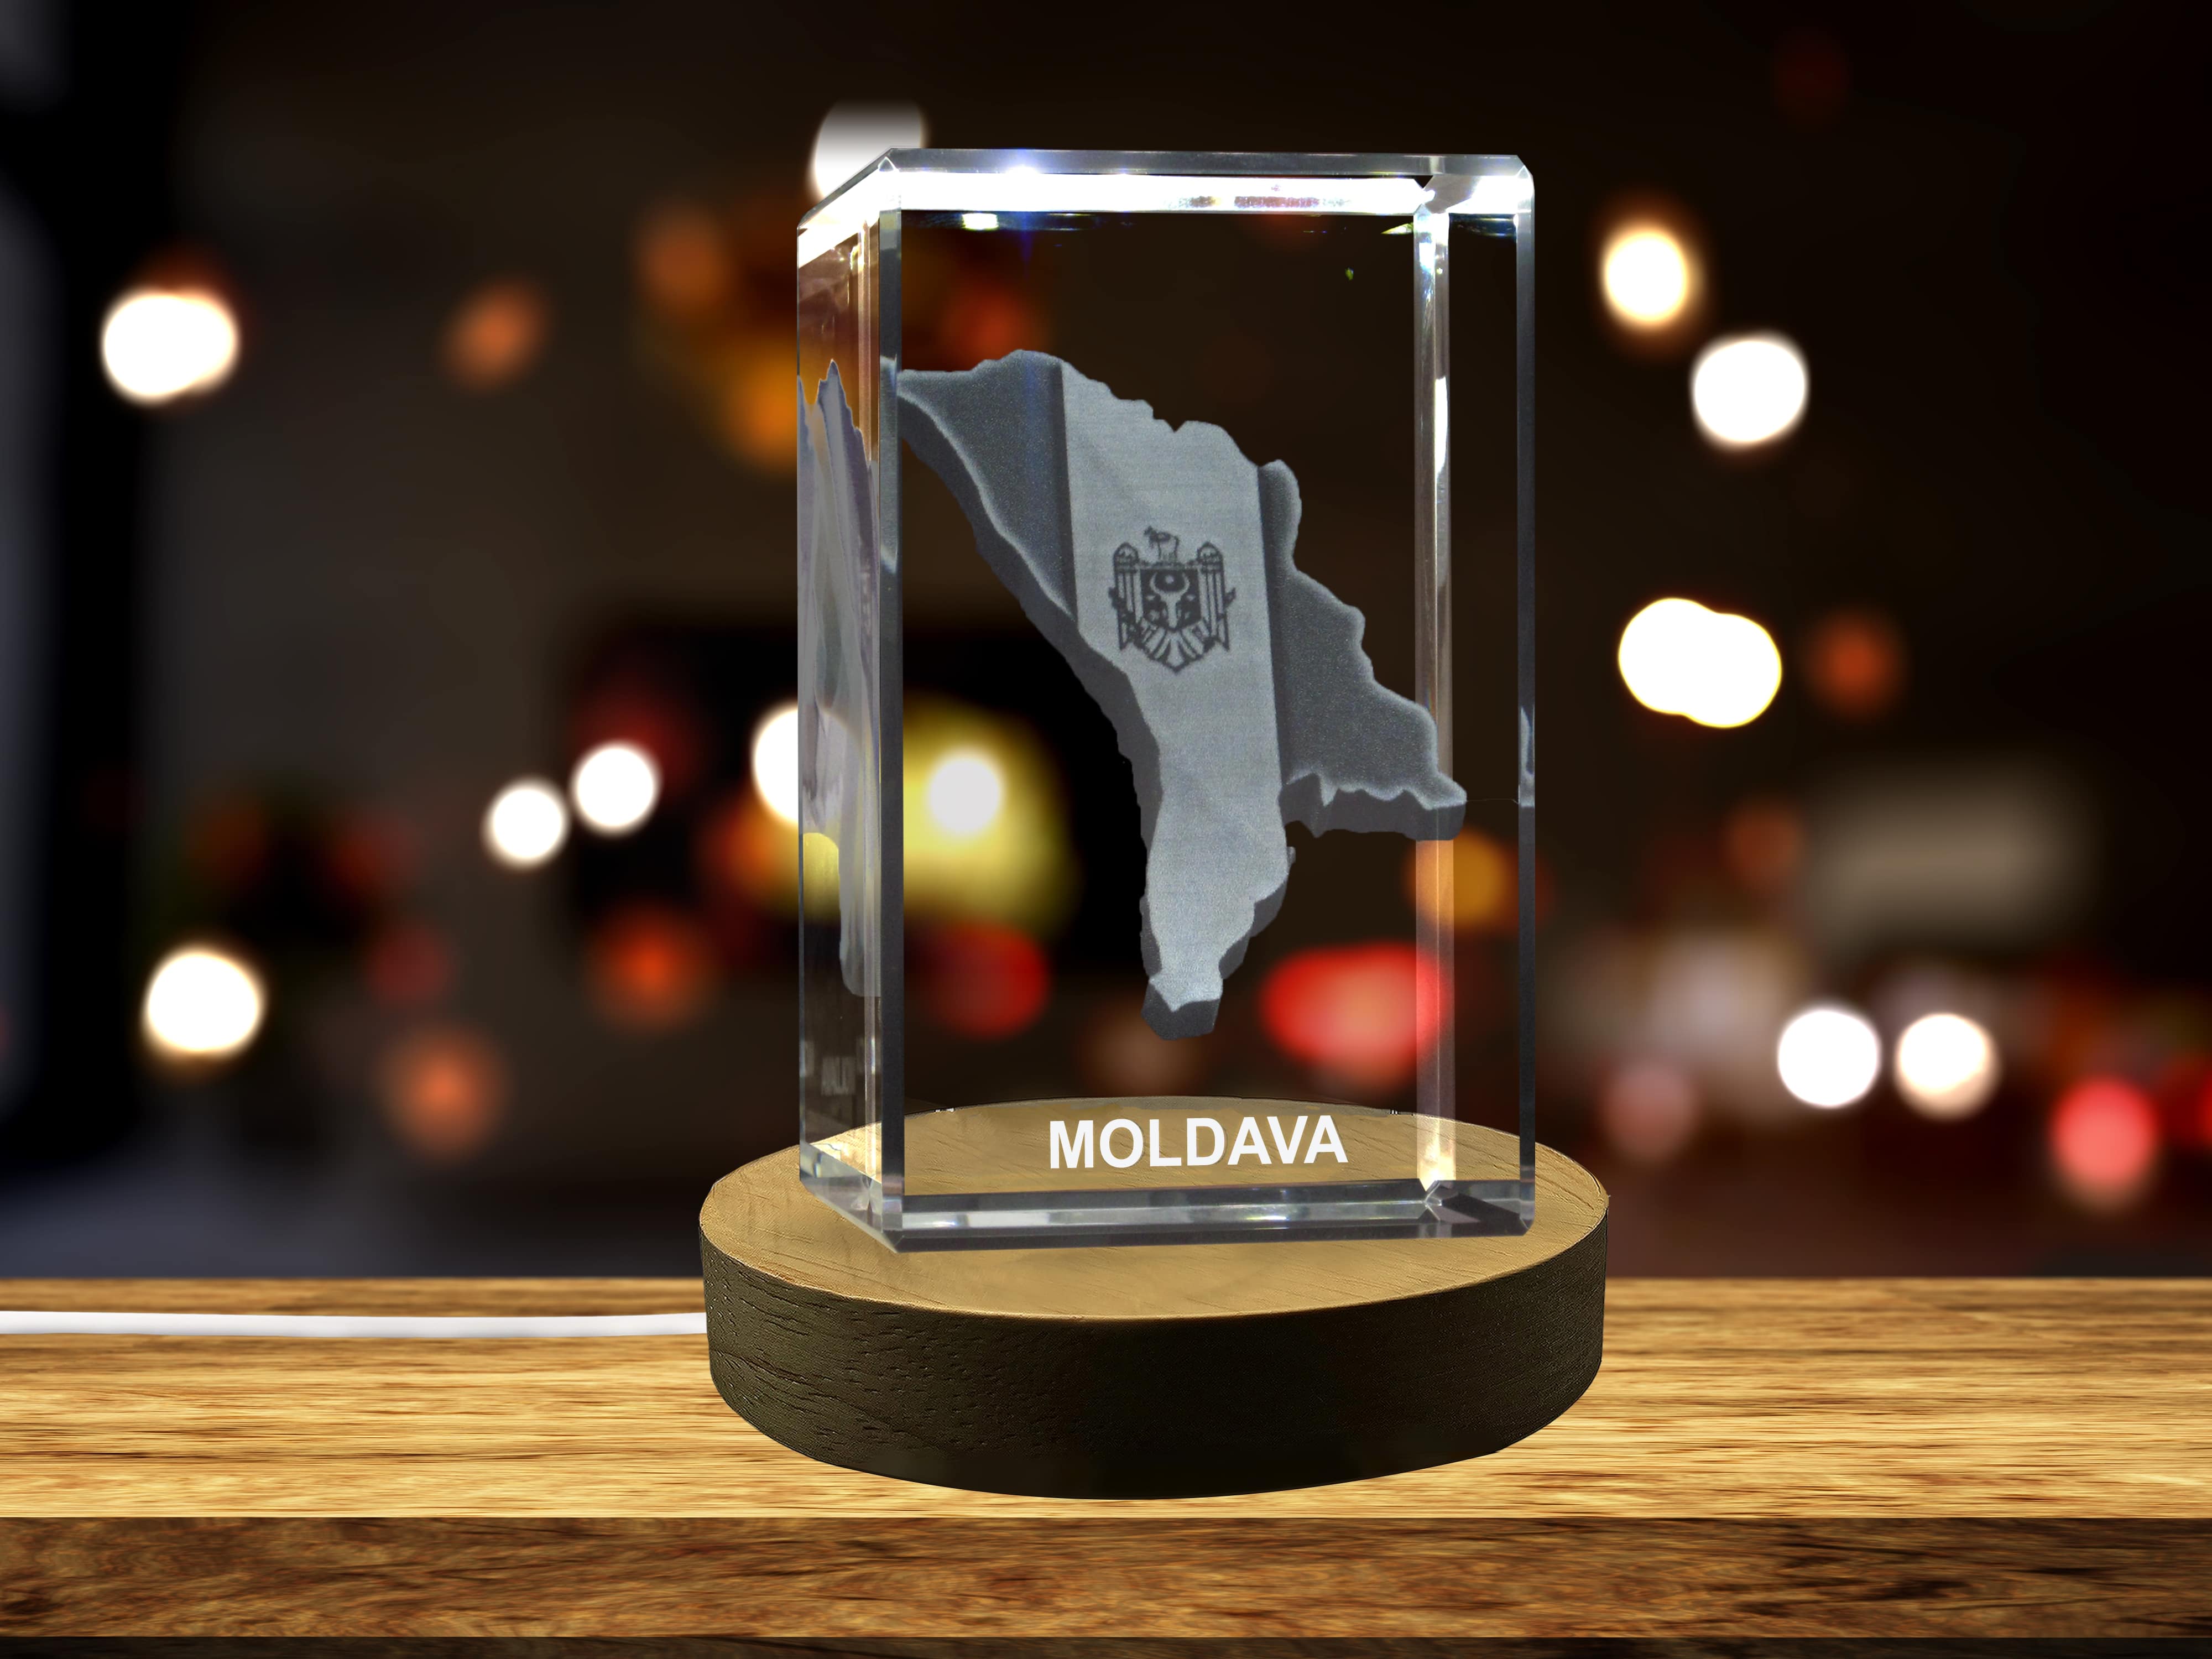 Moldova 3D Engraved Crystal 3D Engraved Crystal Keepsake/Gift/Decor/Collectible/Souvenir A&B Crystal Collection